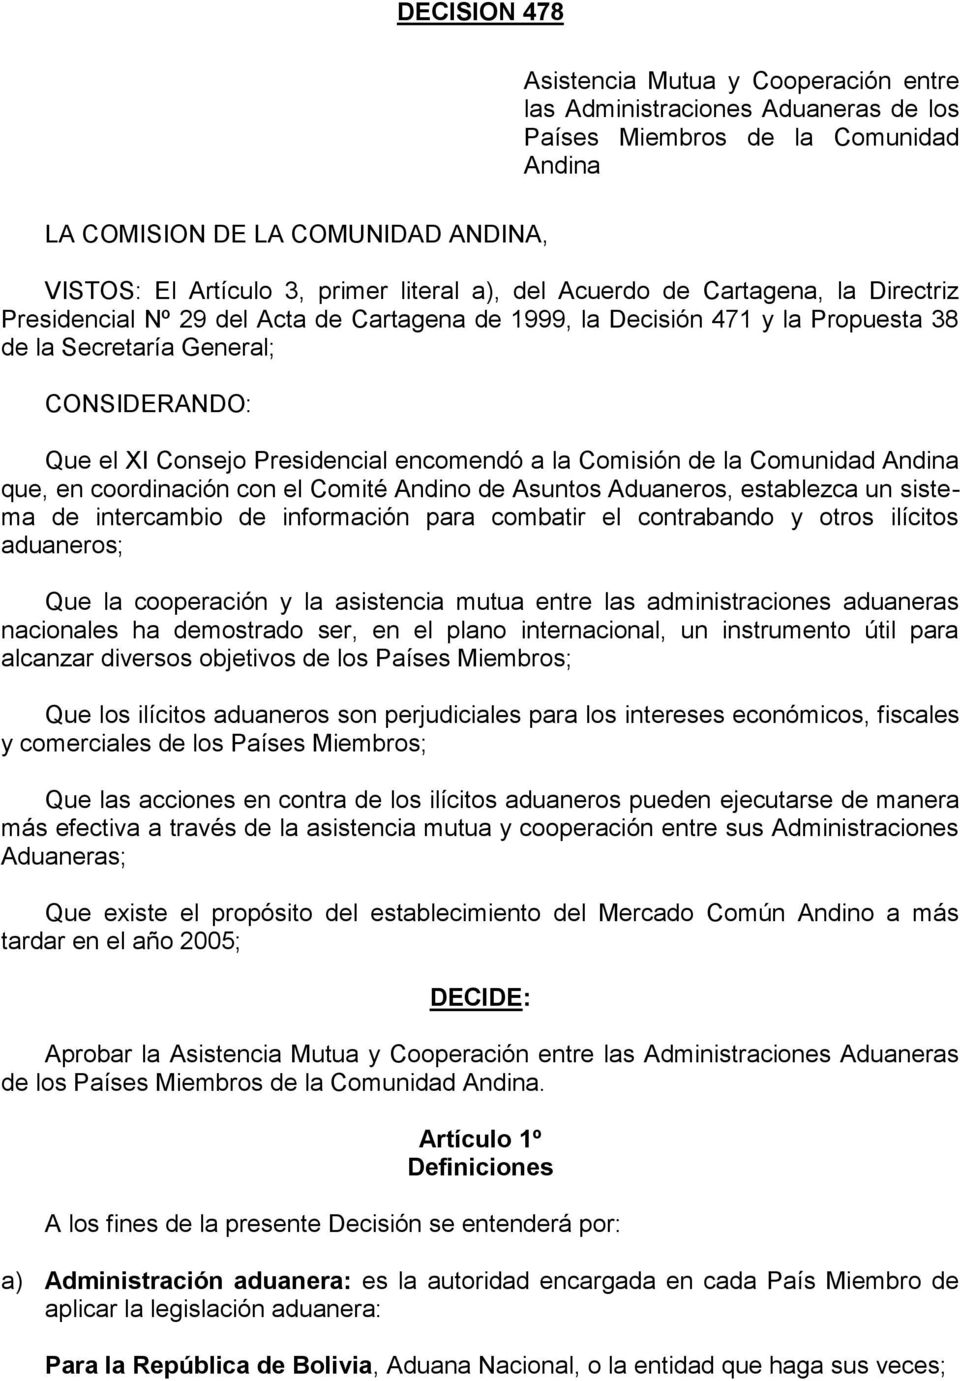 Presidencial encomendó a la Comisión de la Comunidad Andina que, en coordinación con el Comité Andino de Asuntos Aduaneros, establezca un sistema de intercambio de información para combatir el